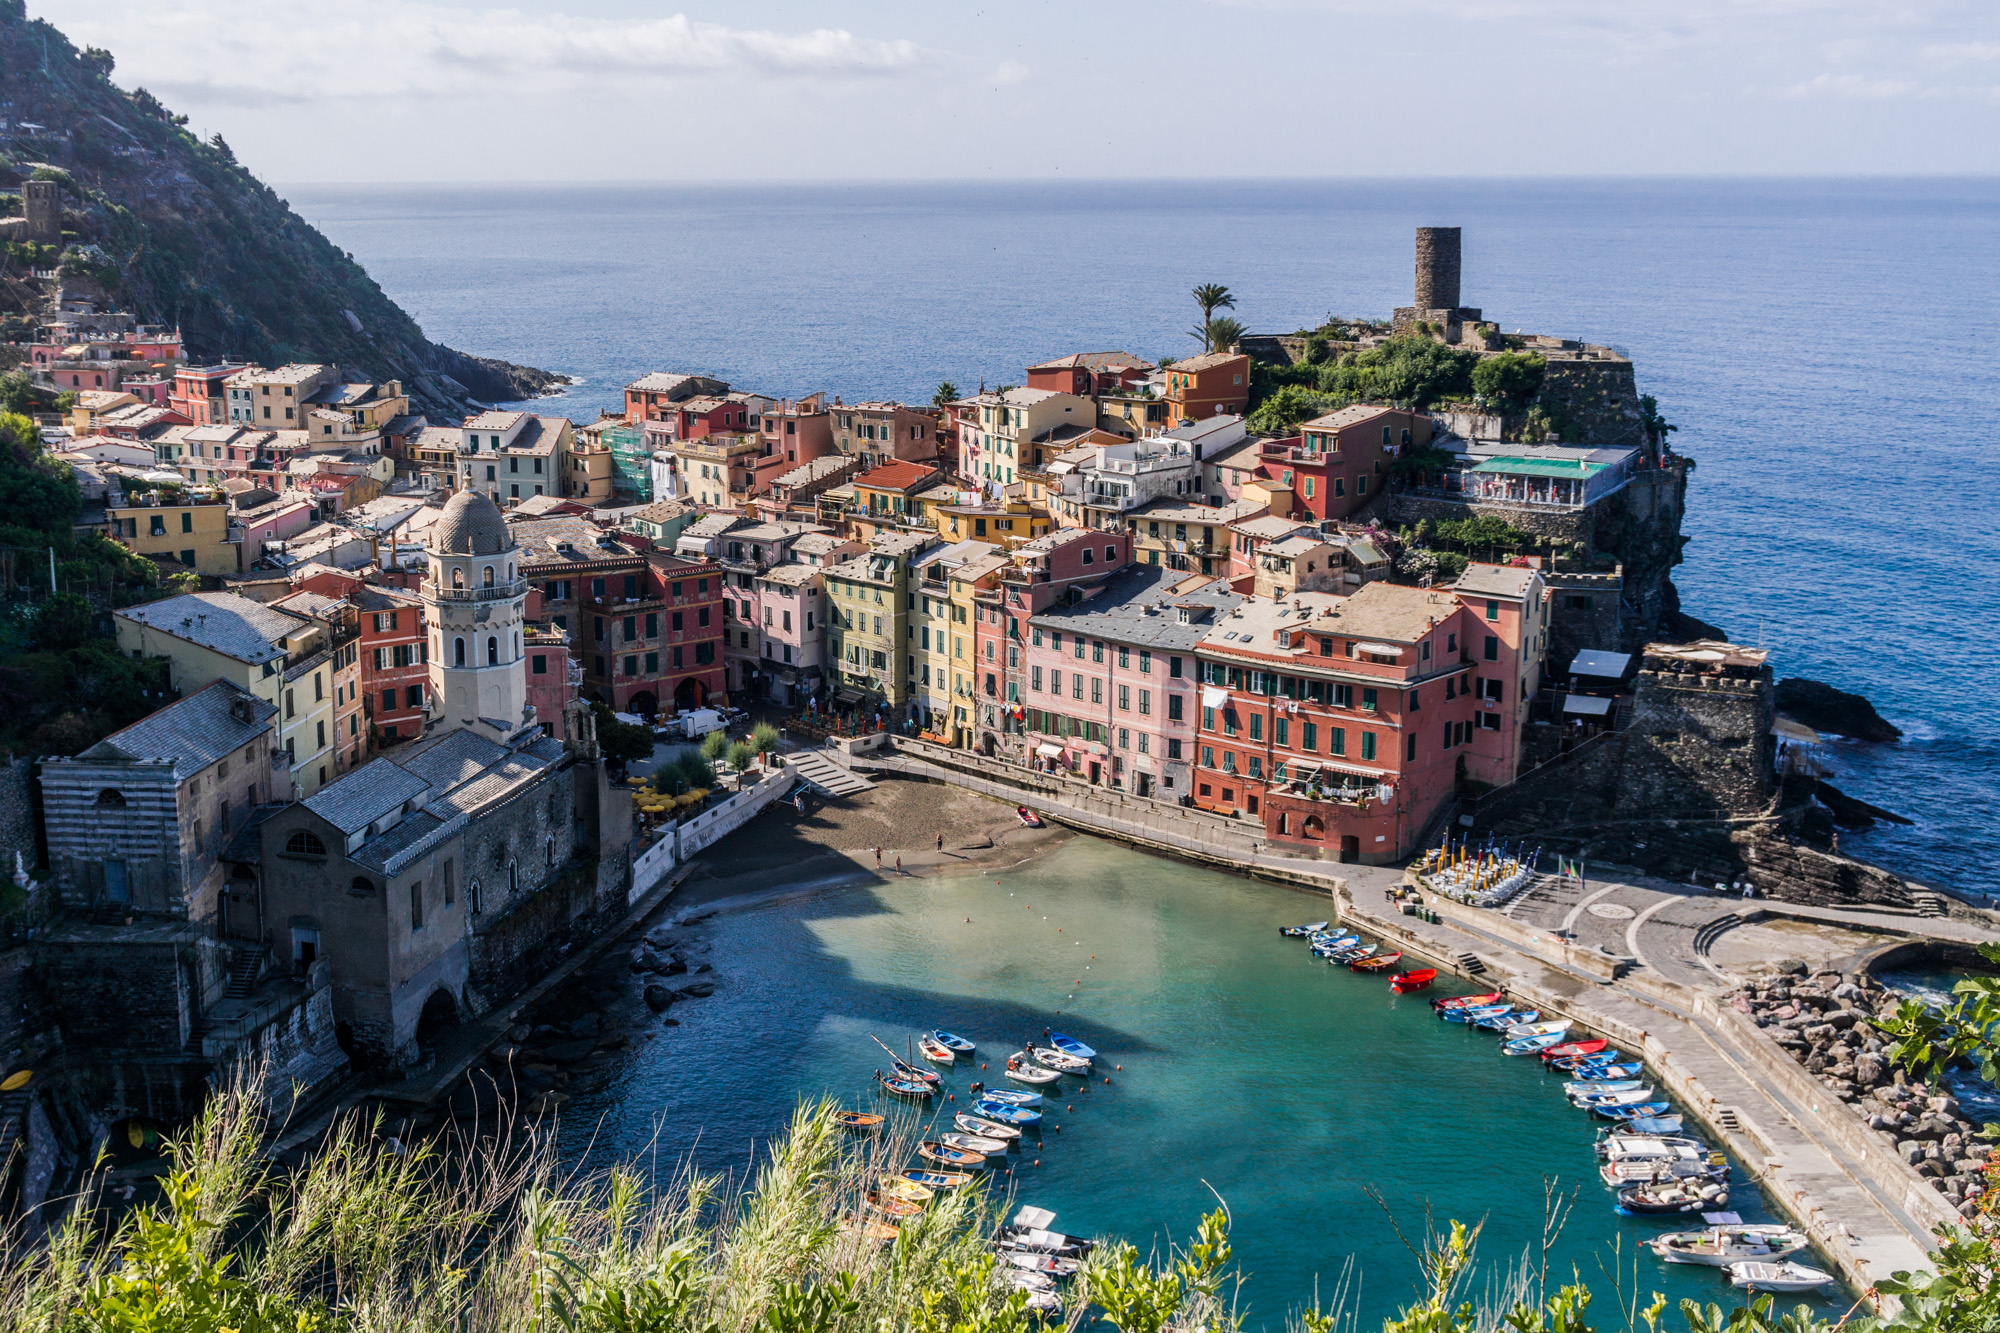 France/Italy roadtrip – the Cinque Terre path: Monterosso & Vernazza